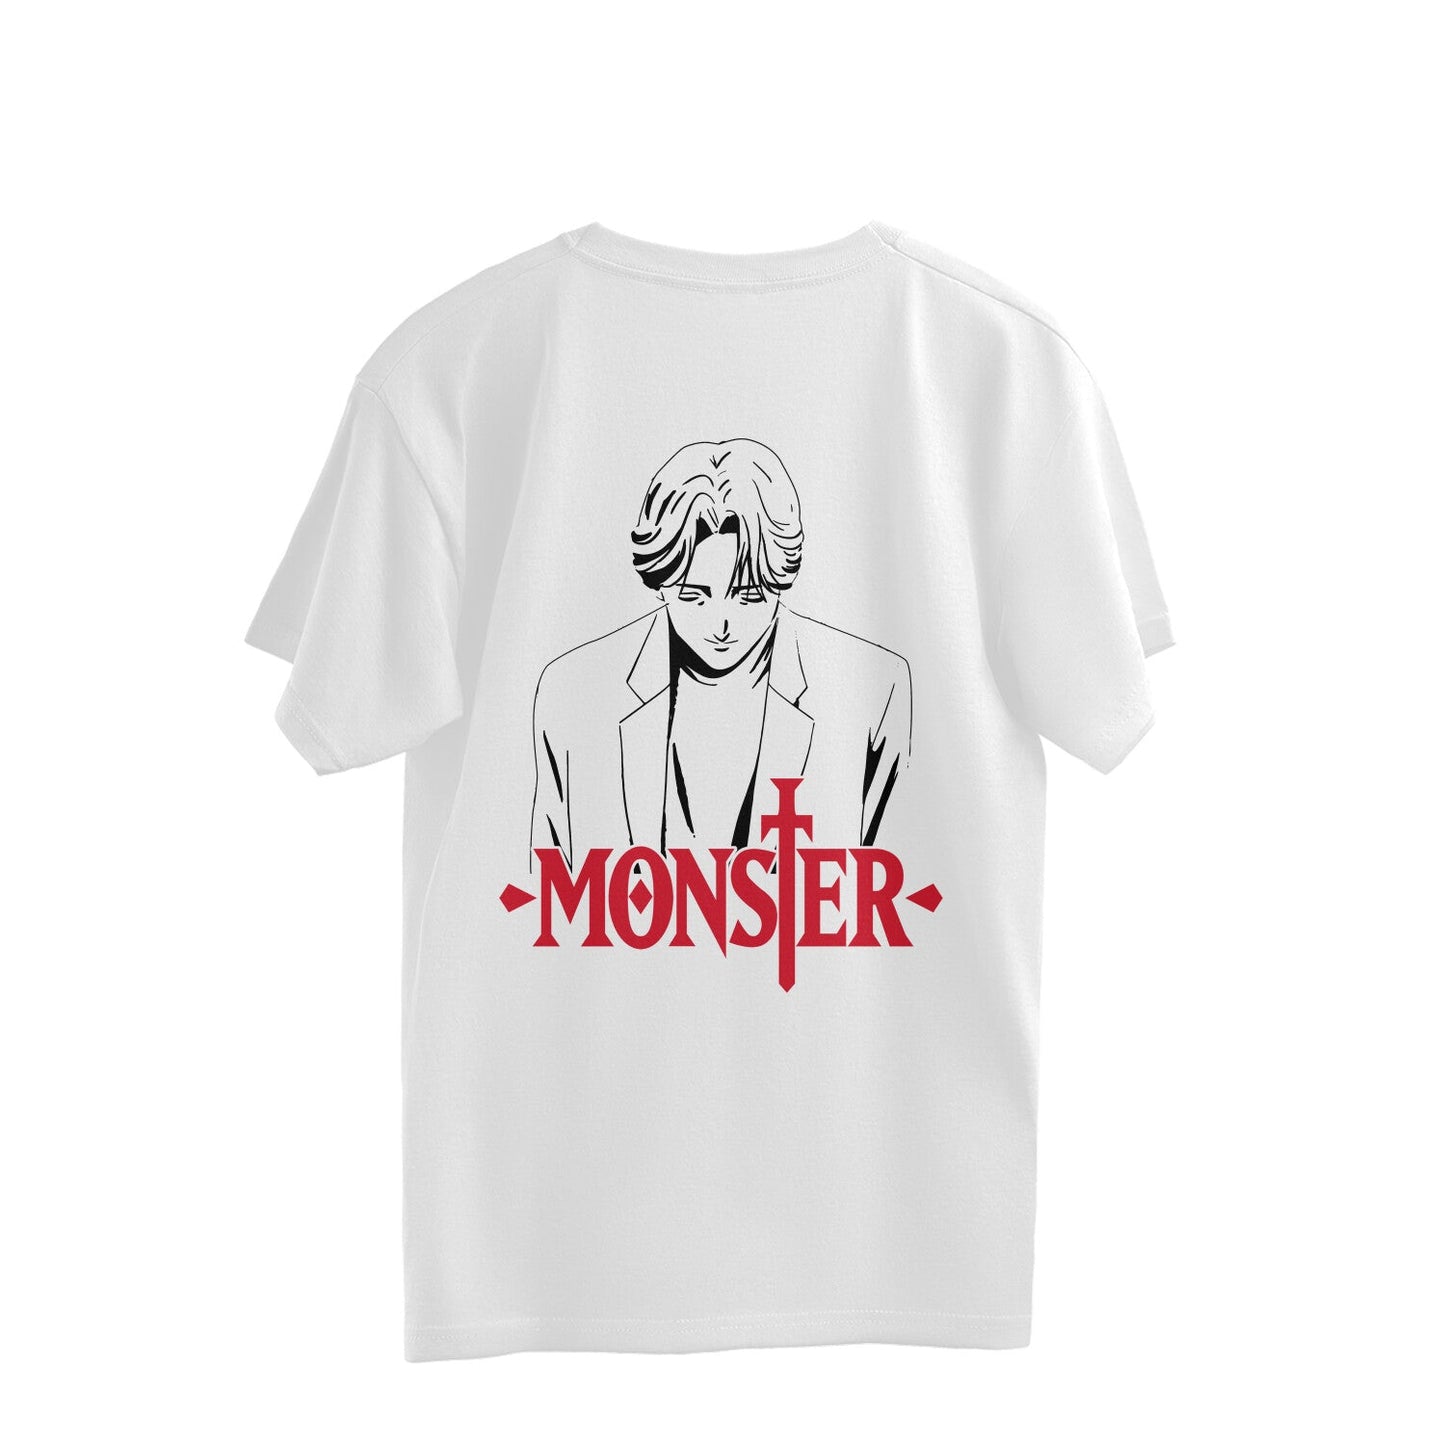 Monster - Johan Liebert Sketch - Oversized Tshirt - Kashiba Store